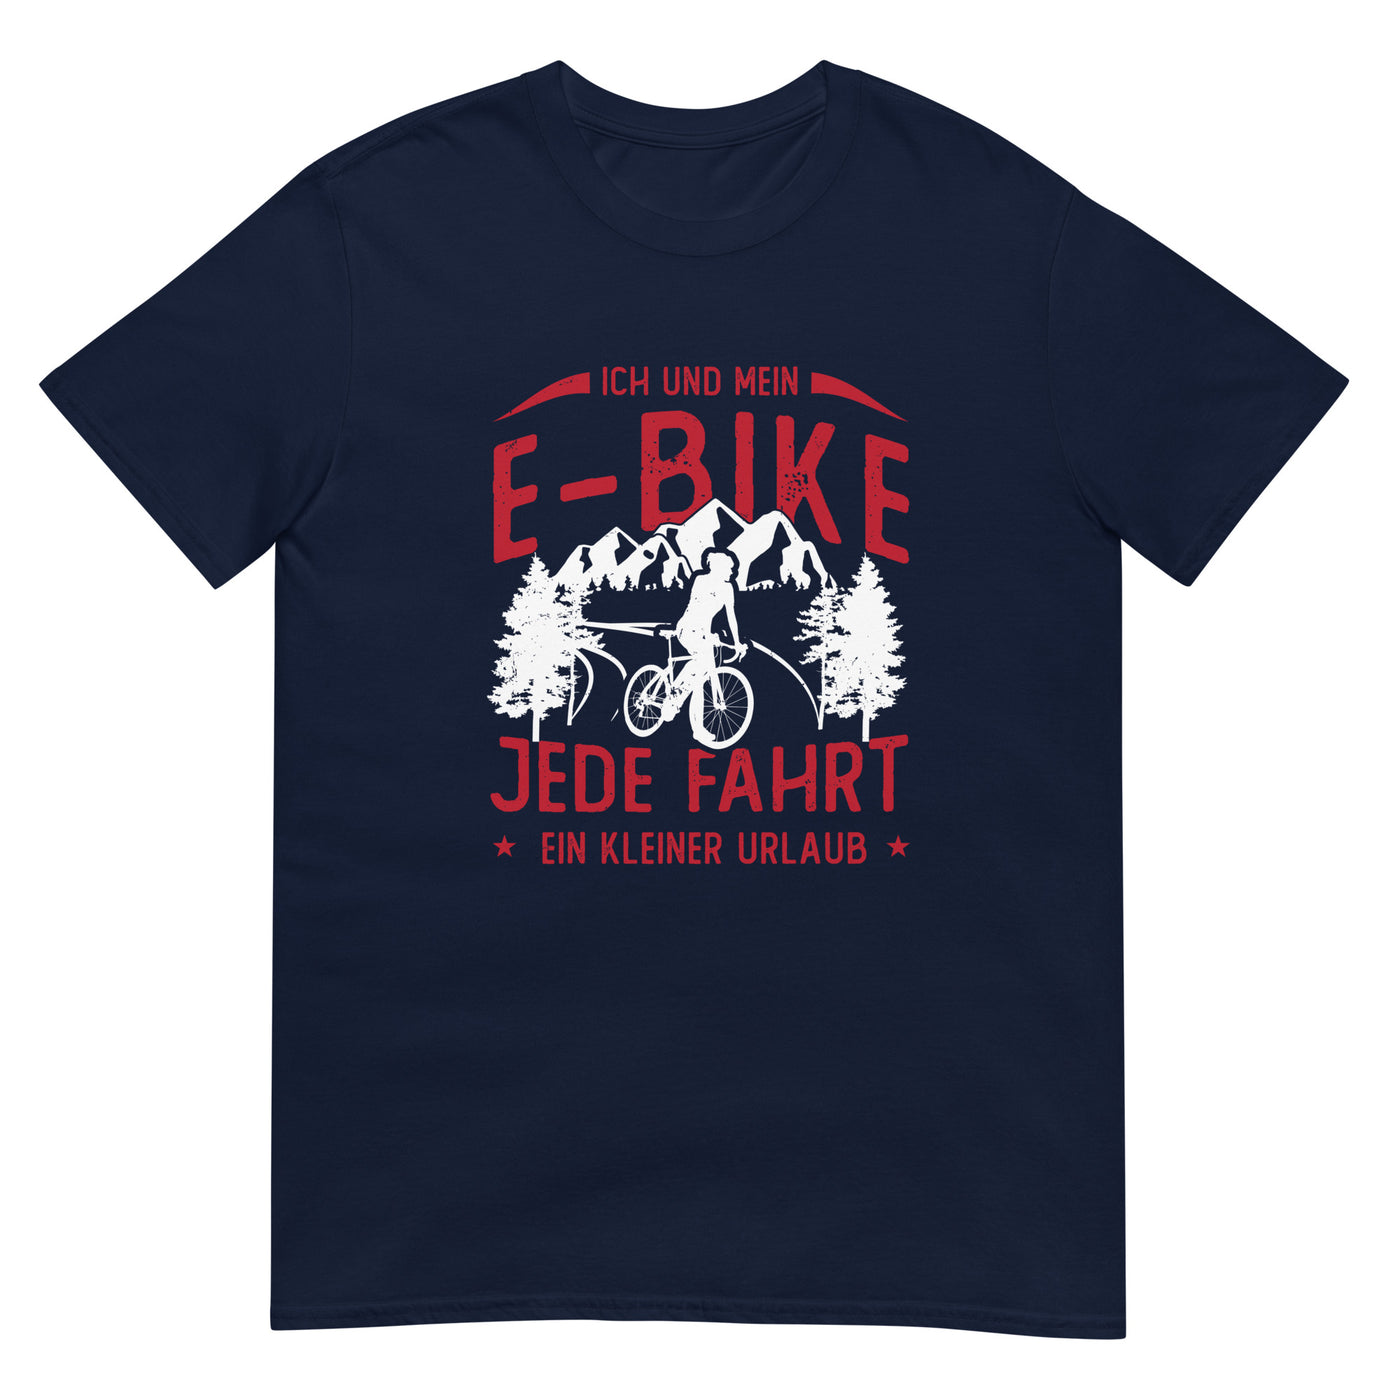 Ich & Mein E-Bike, Jede Fahrt Ein Urlaub - T-Shirt (Unisex) e-bike xxx yyy zzz Navy